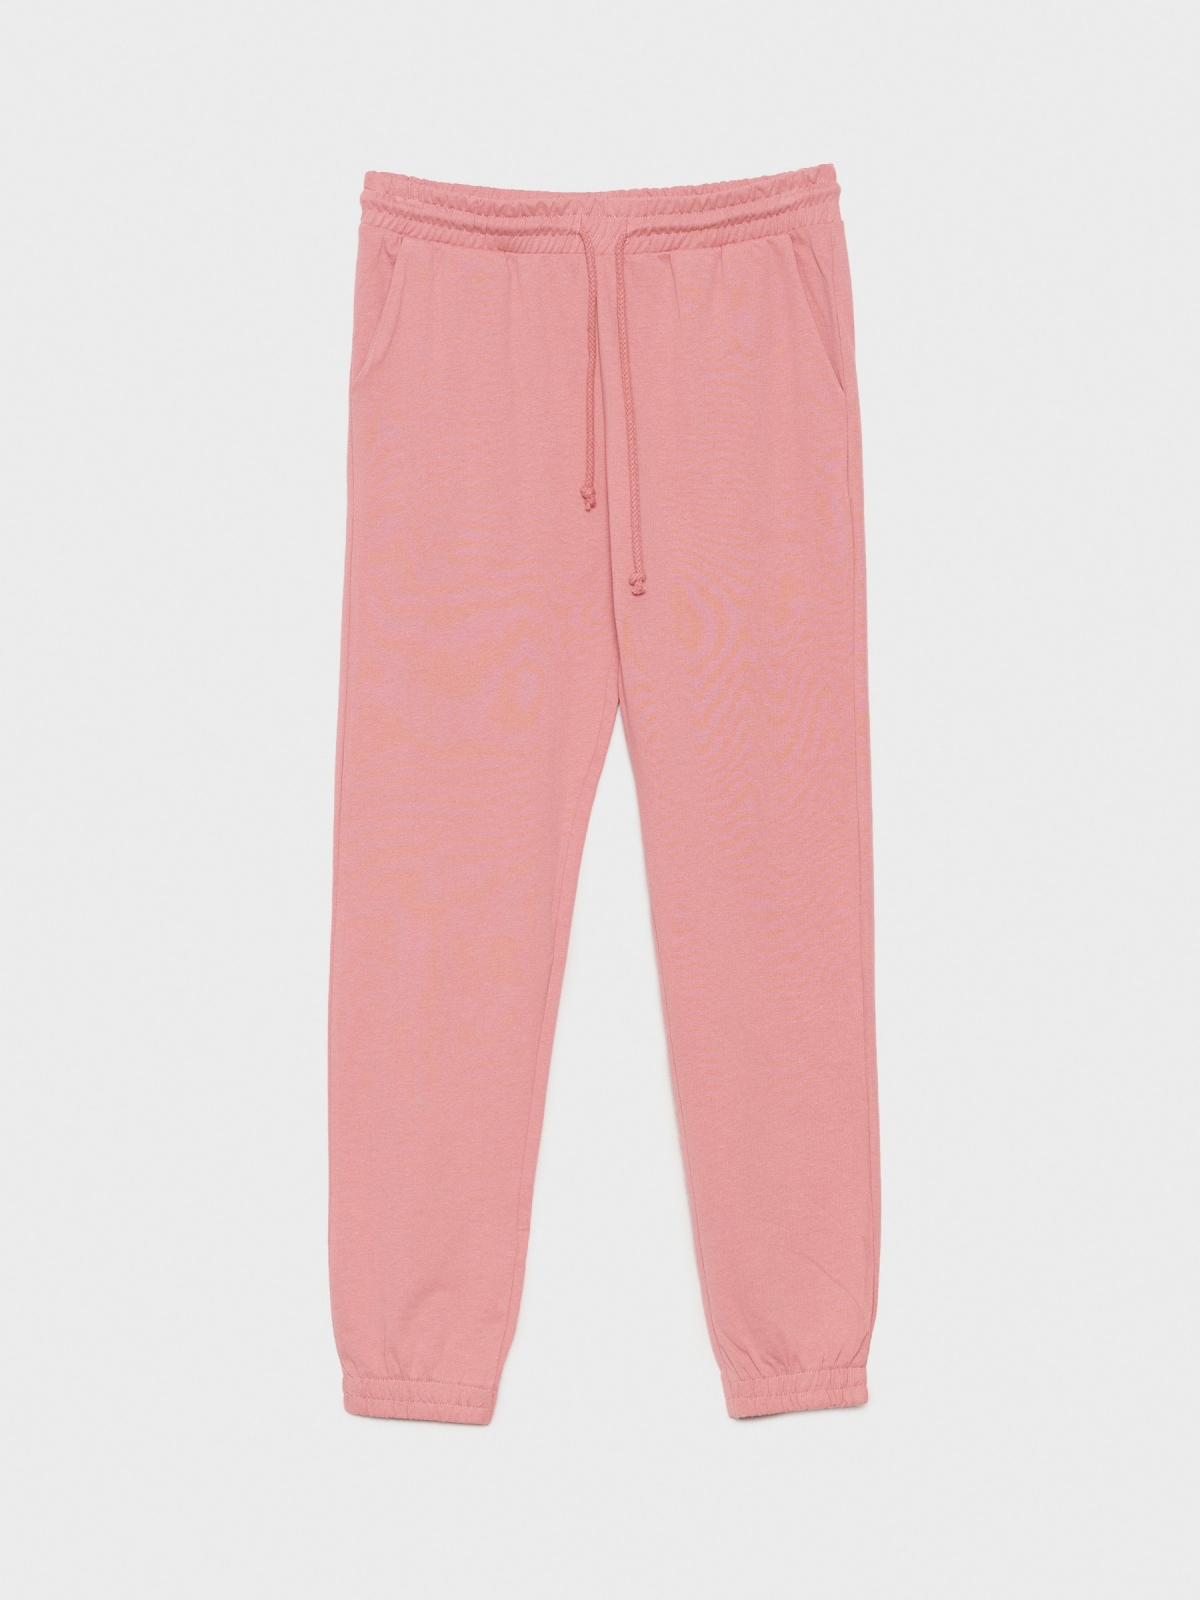  Pantalón jogger básico rosa claro